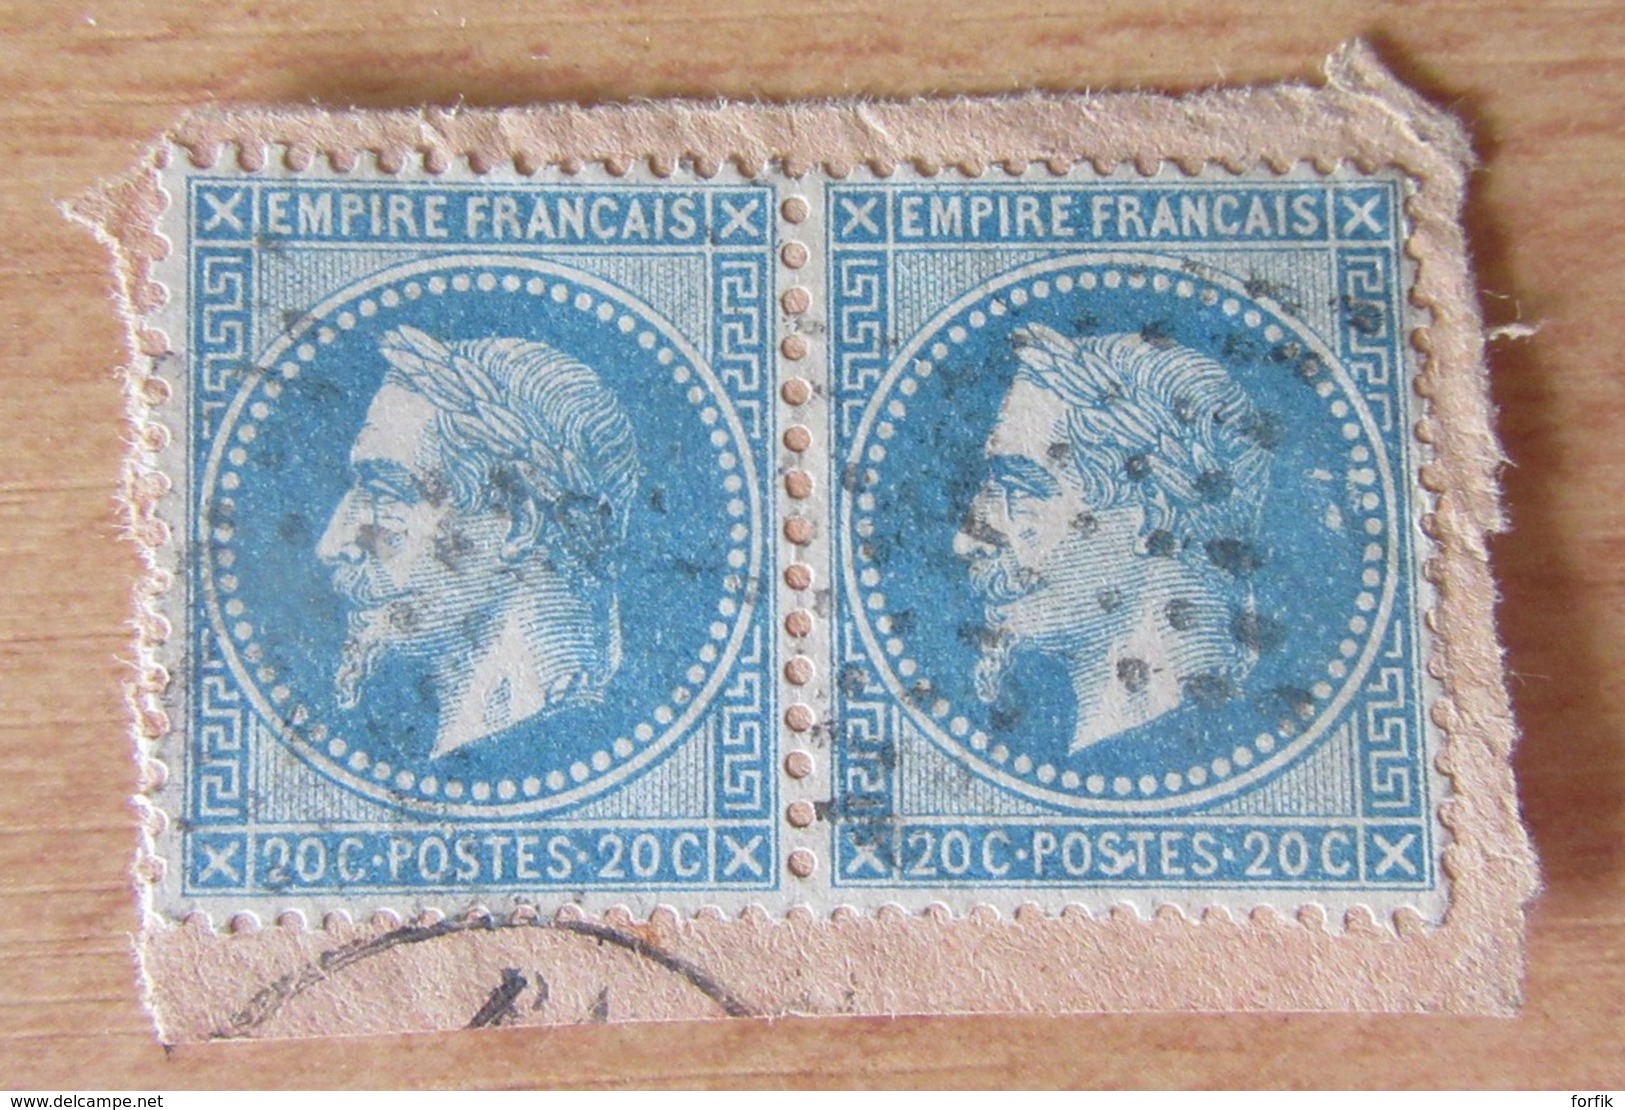 France - Paire Horizontale Du 20c YT N°29B - Variété "corne" Sur Le S De Postes (timbre De Droite) - 1863-1870 Napoleon III With Laurels